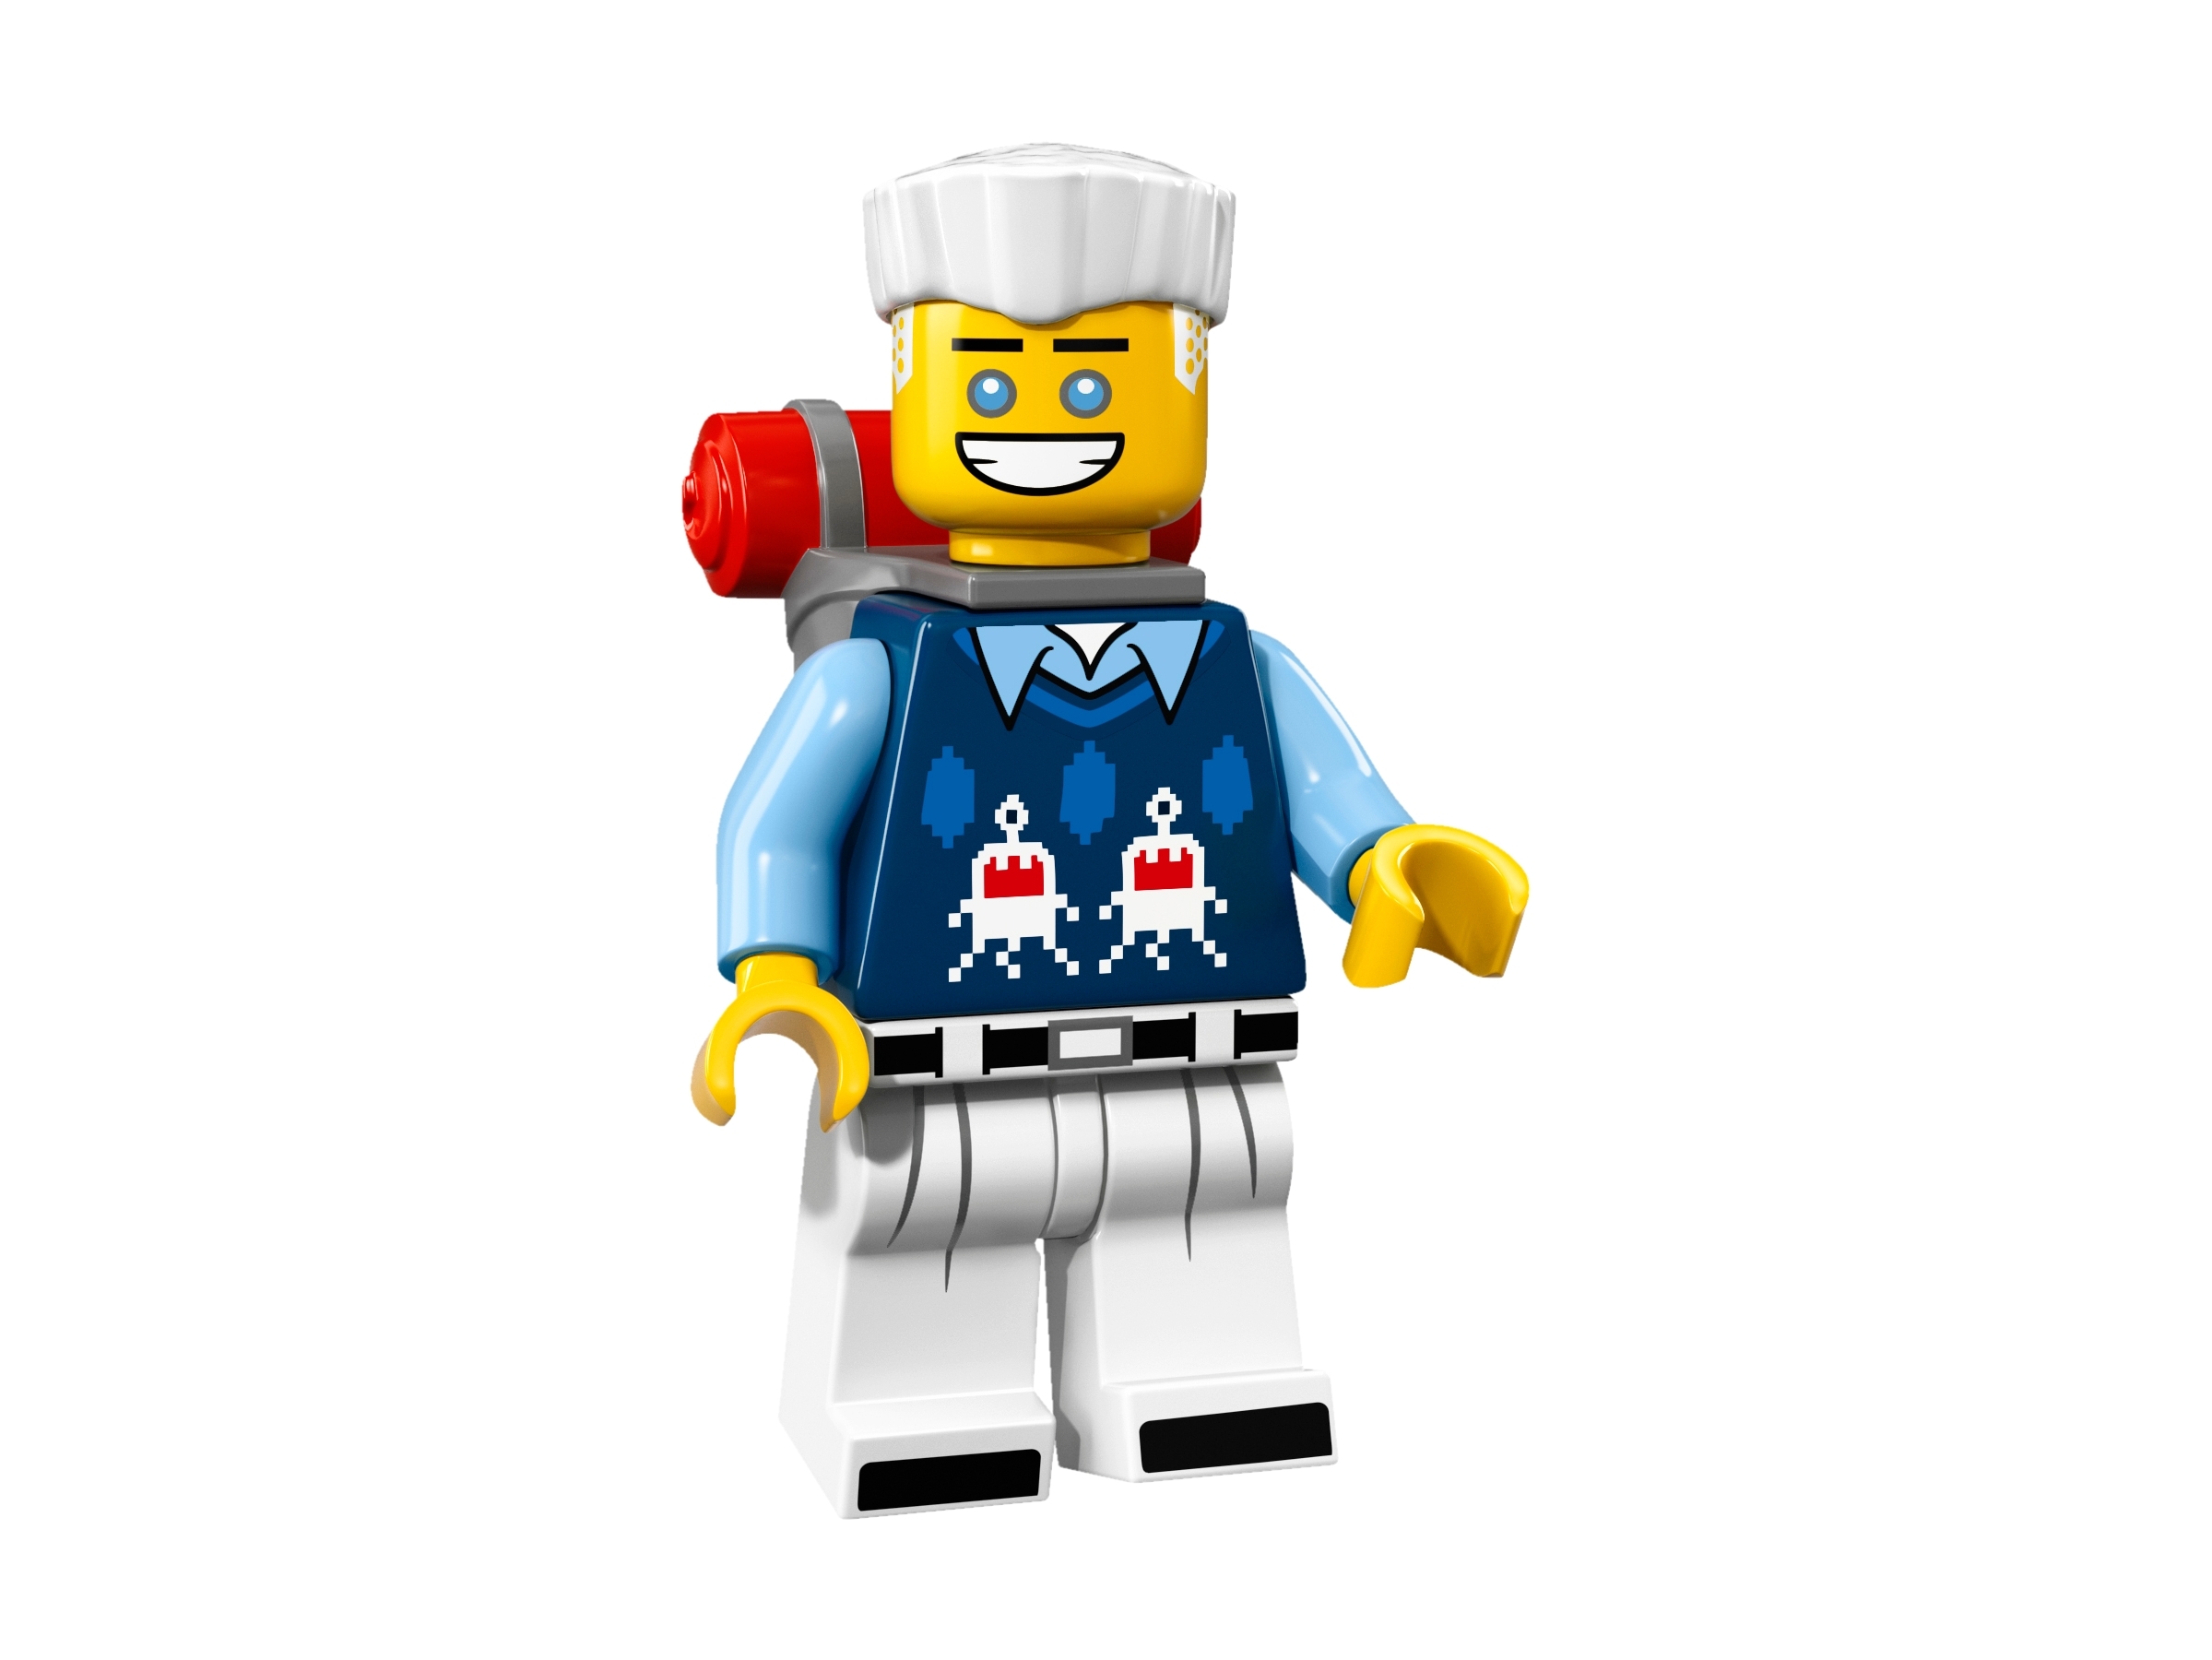 Neu & unbespielt Lego 71019 The Ninjago Movie Minifiguren zum aussuchen 